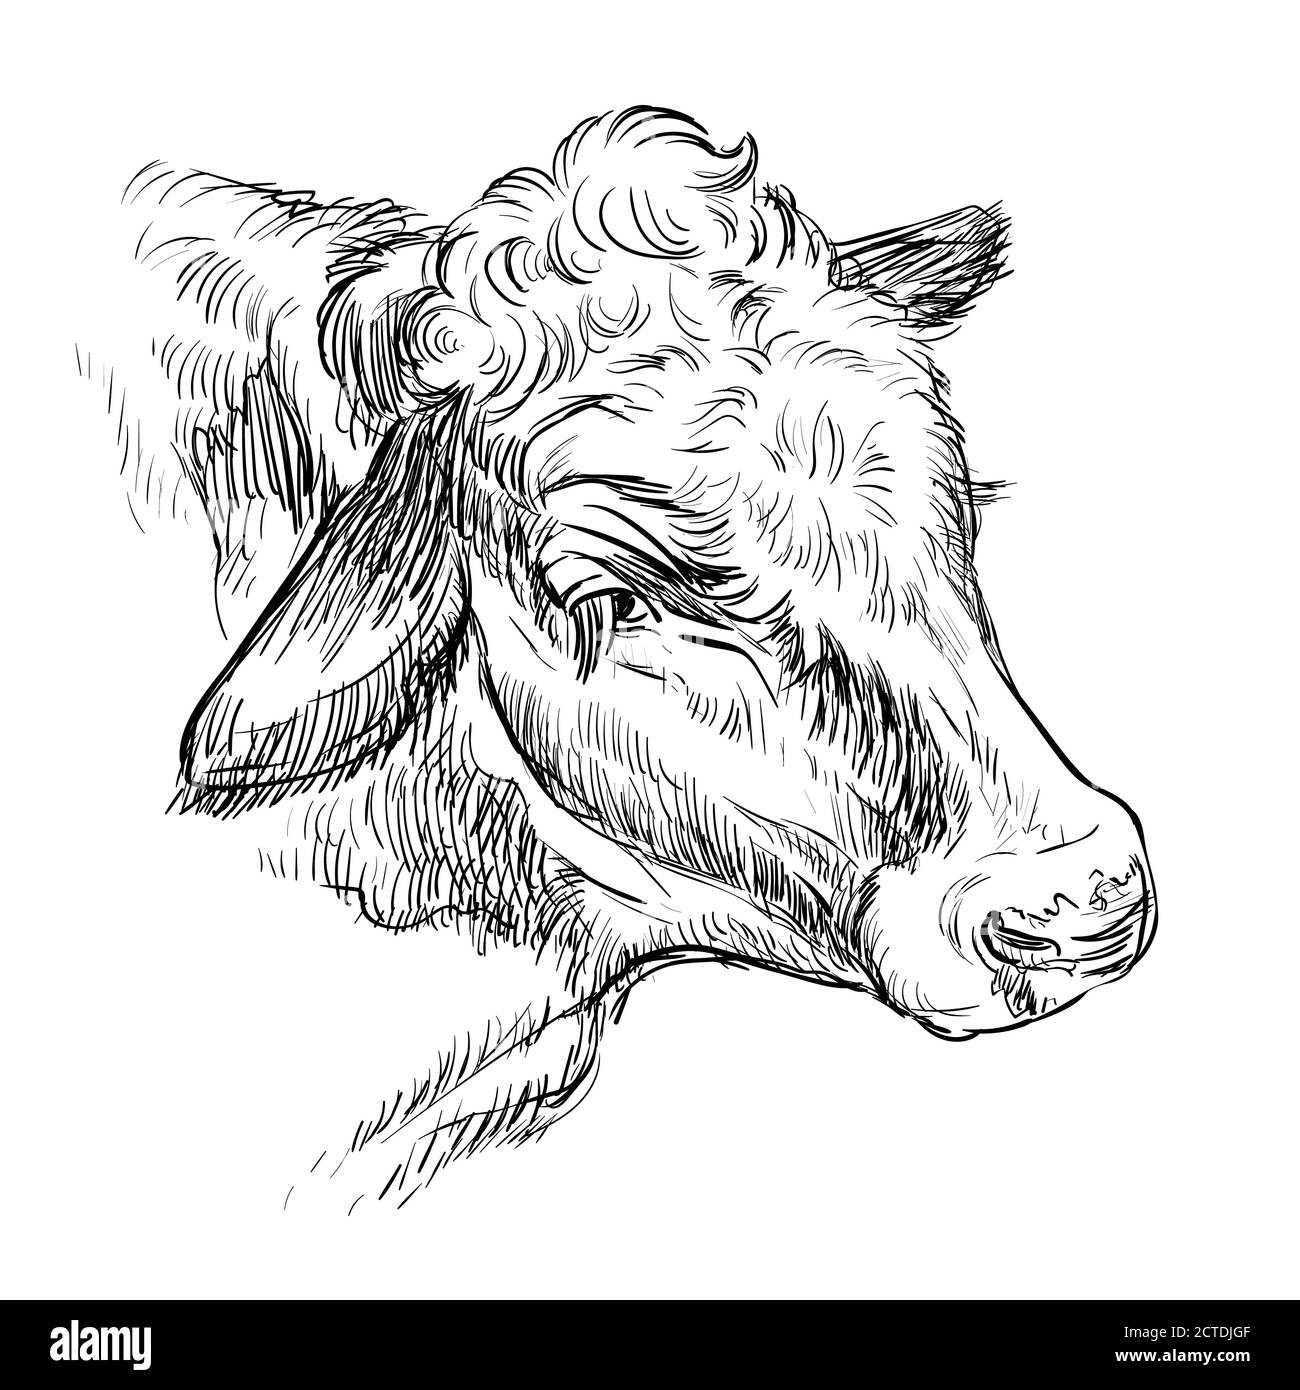 Ritratto monocromatico dello schizzo della mucca tipo illustrazione vettoriale disegnata a mano isolata su sfondo bianco. Illustrazione dello schizzo di incisione del toro per l'etichetta, p Illustrazione Vettoriale